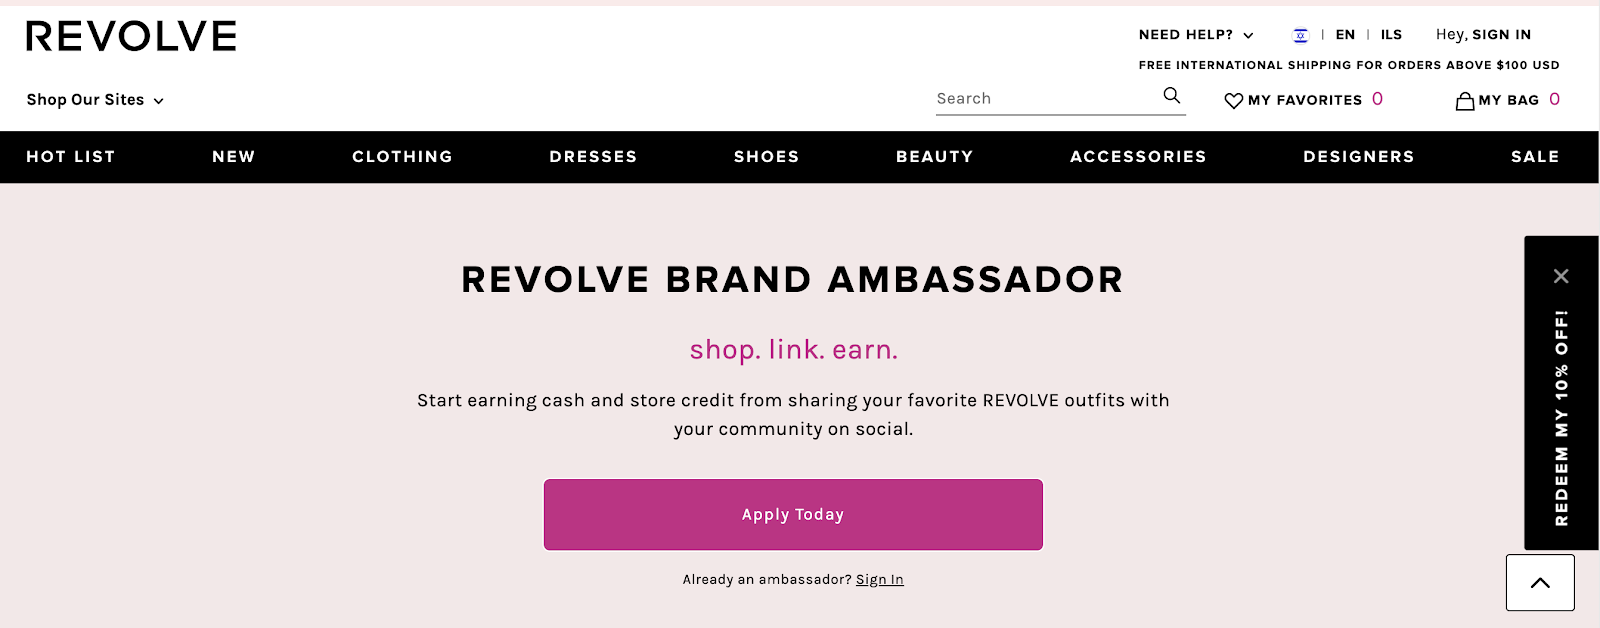 revolve-brand-ambassador.png